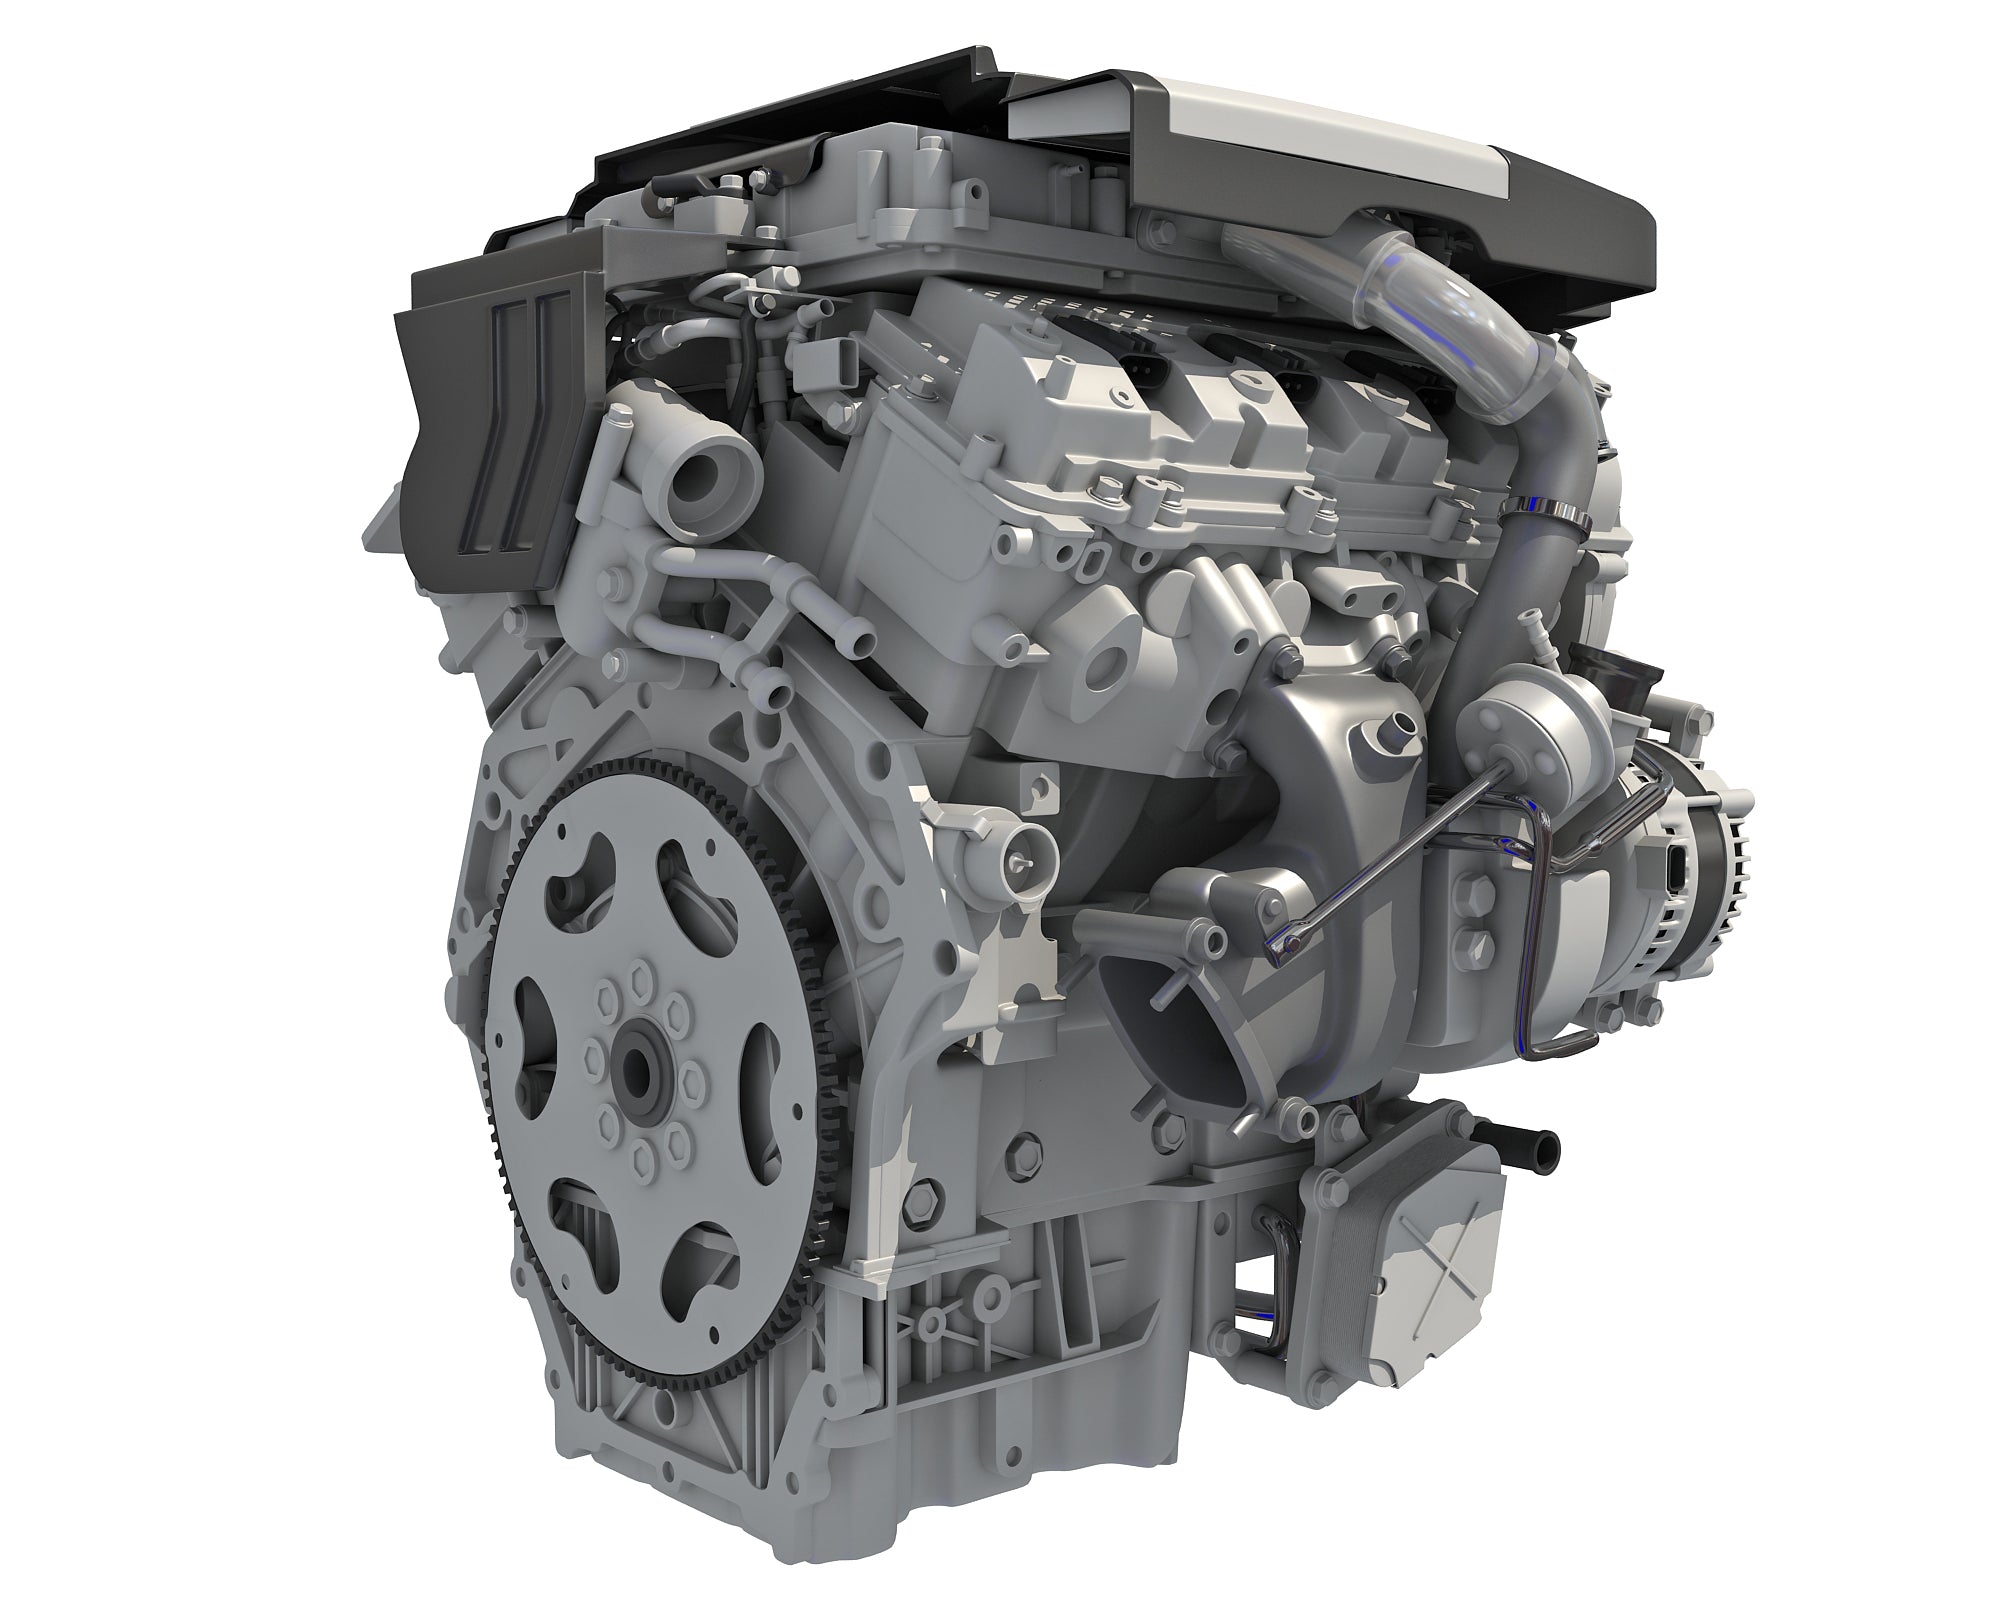 Animated V6 Engine